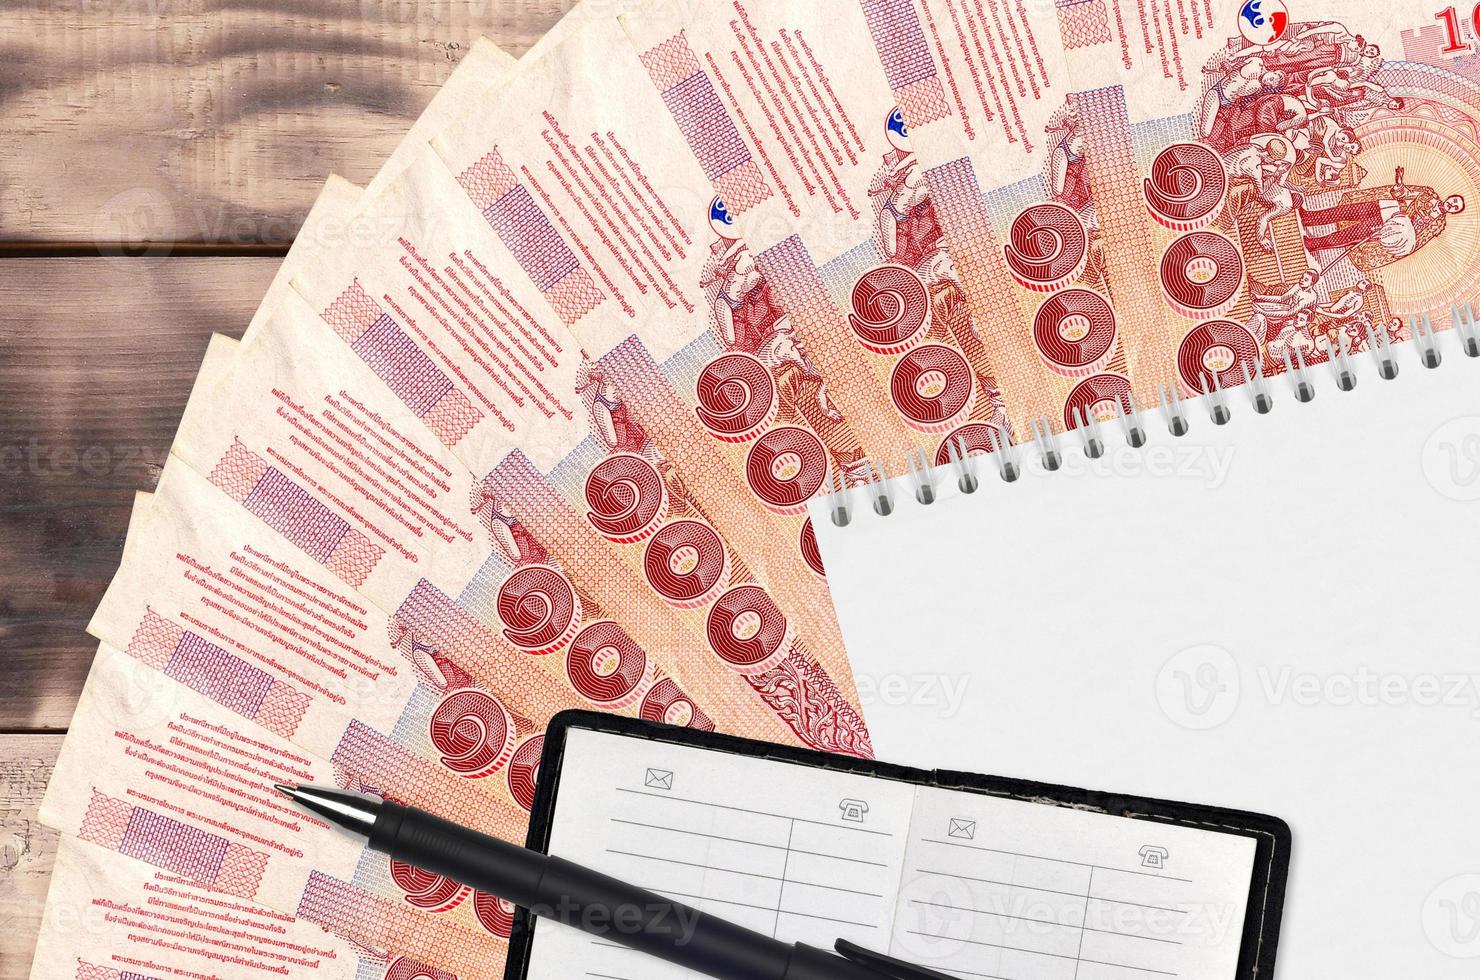 Ventilador de notas de 100 baht tailandês e bloco de notas com livro de contatos e caneta preta. conceito de planejamento financeiro e estratégia de negócios foto